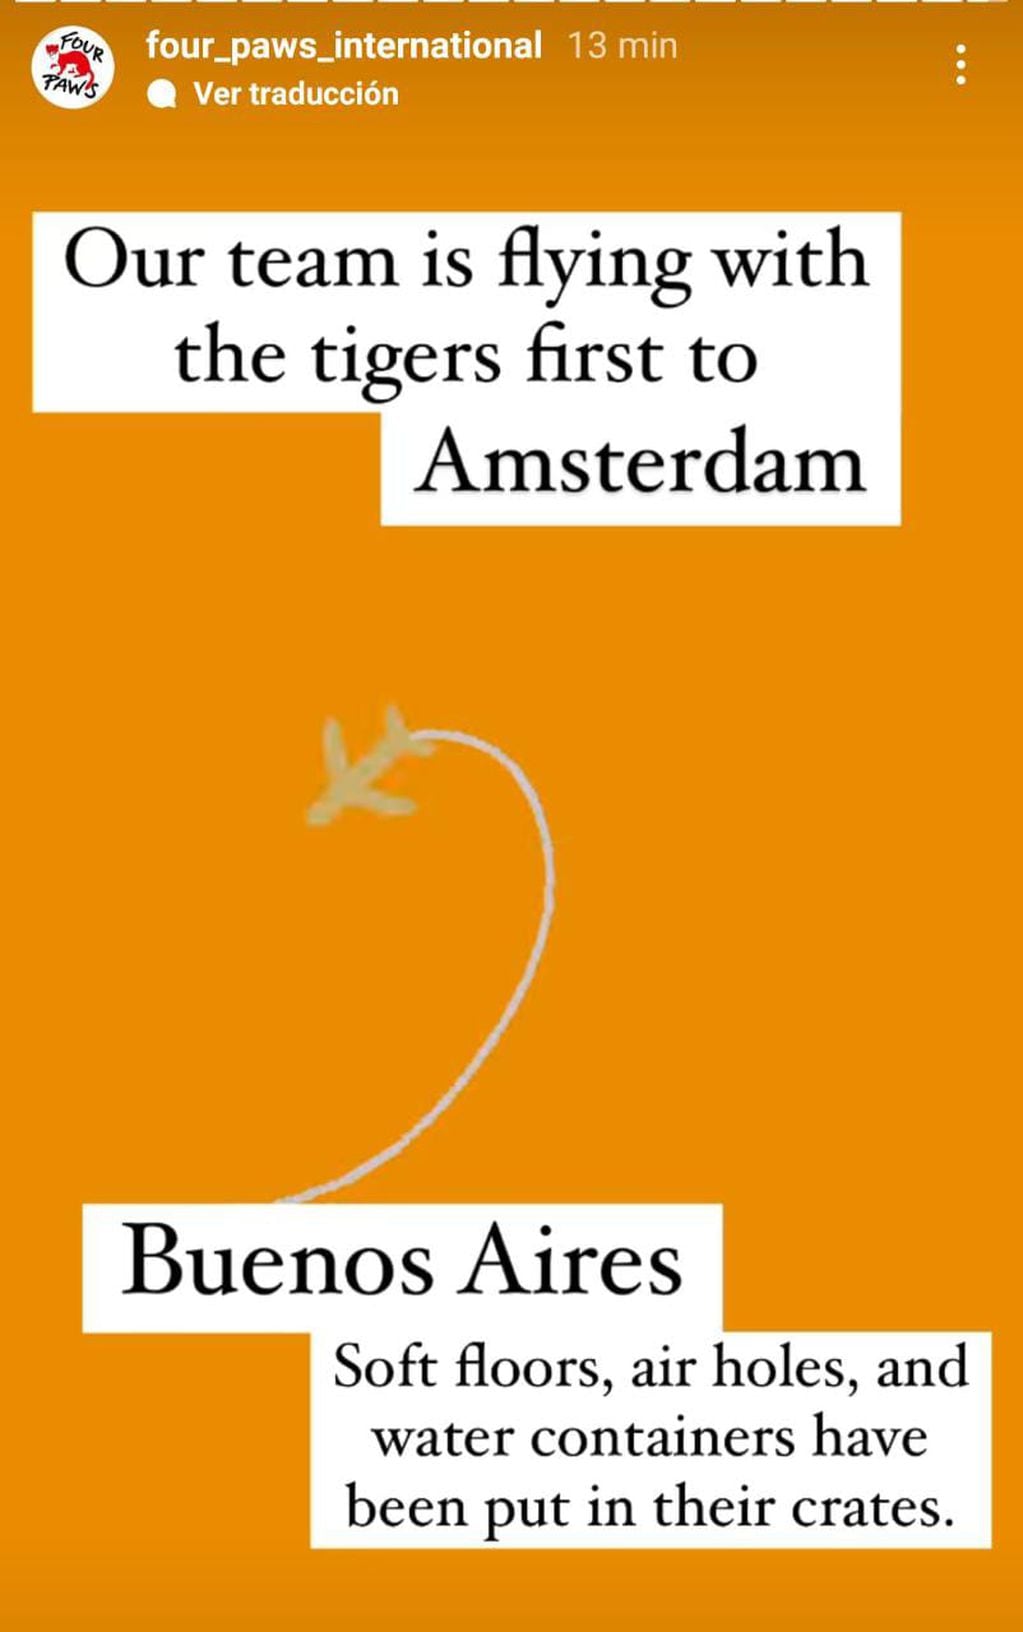 Traducción: "Nuestro equipo hará escala junto a los tigres en Ámsterdam... En sus cajas fueron puestos los pisos suaves, los agujeros de ventilación y el agua".